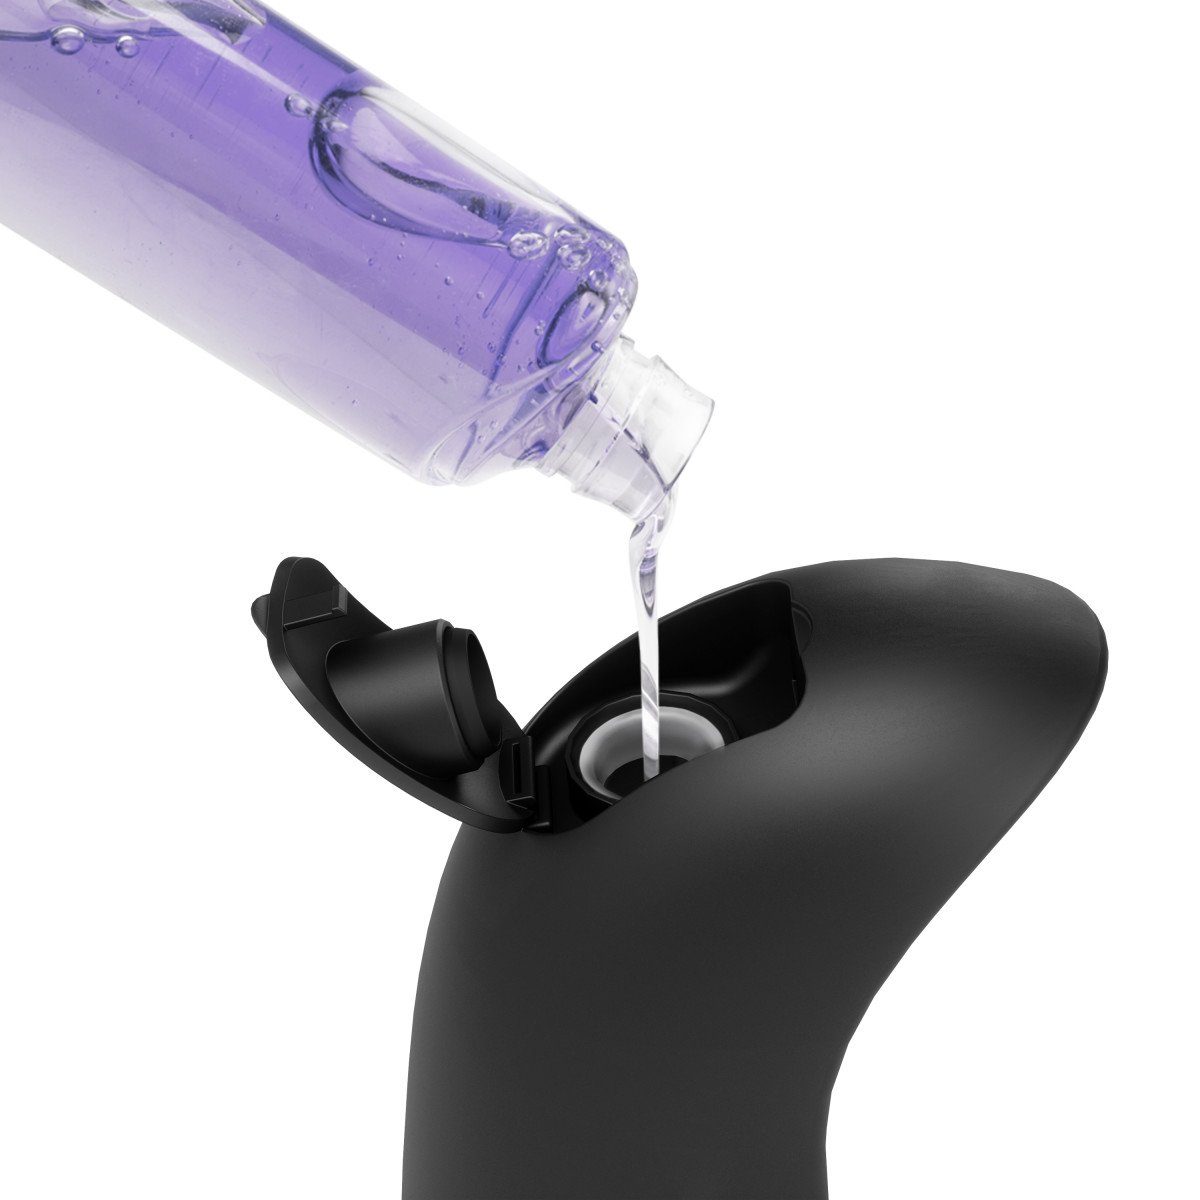 Sensor oder EMPEROR Für Seifenspender Farbwahl, Umbra Seifenspender Flüssigseife - Handdesinfektionsmittel schwarz-weiß fls.